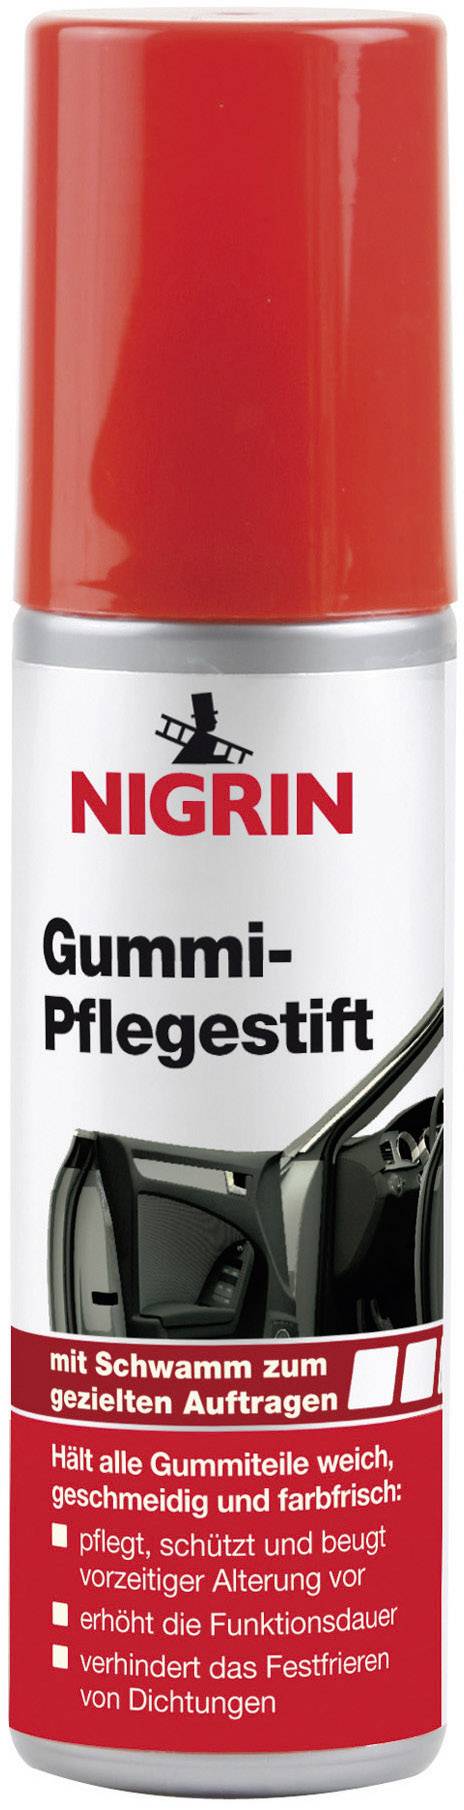 NIGRIN Gummi-Pflegestift 75 ml Gummipflege